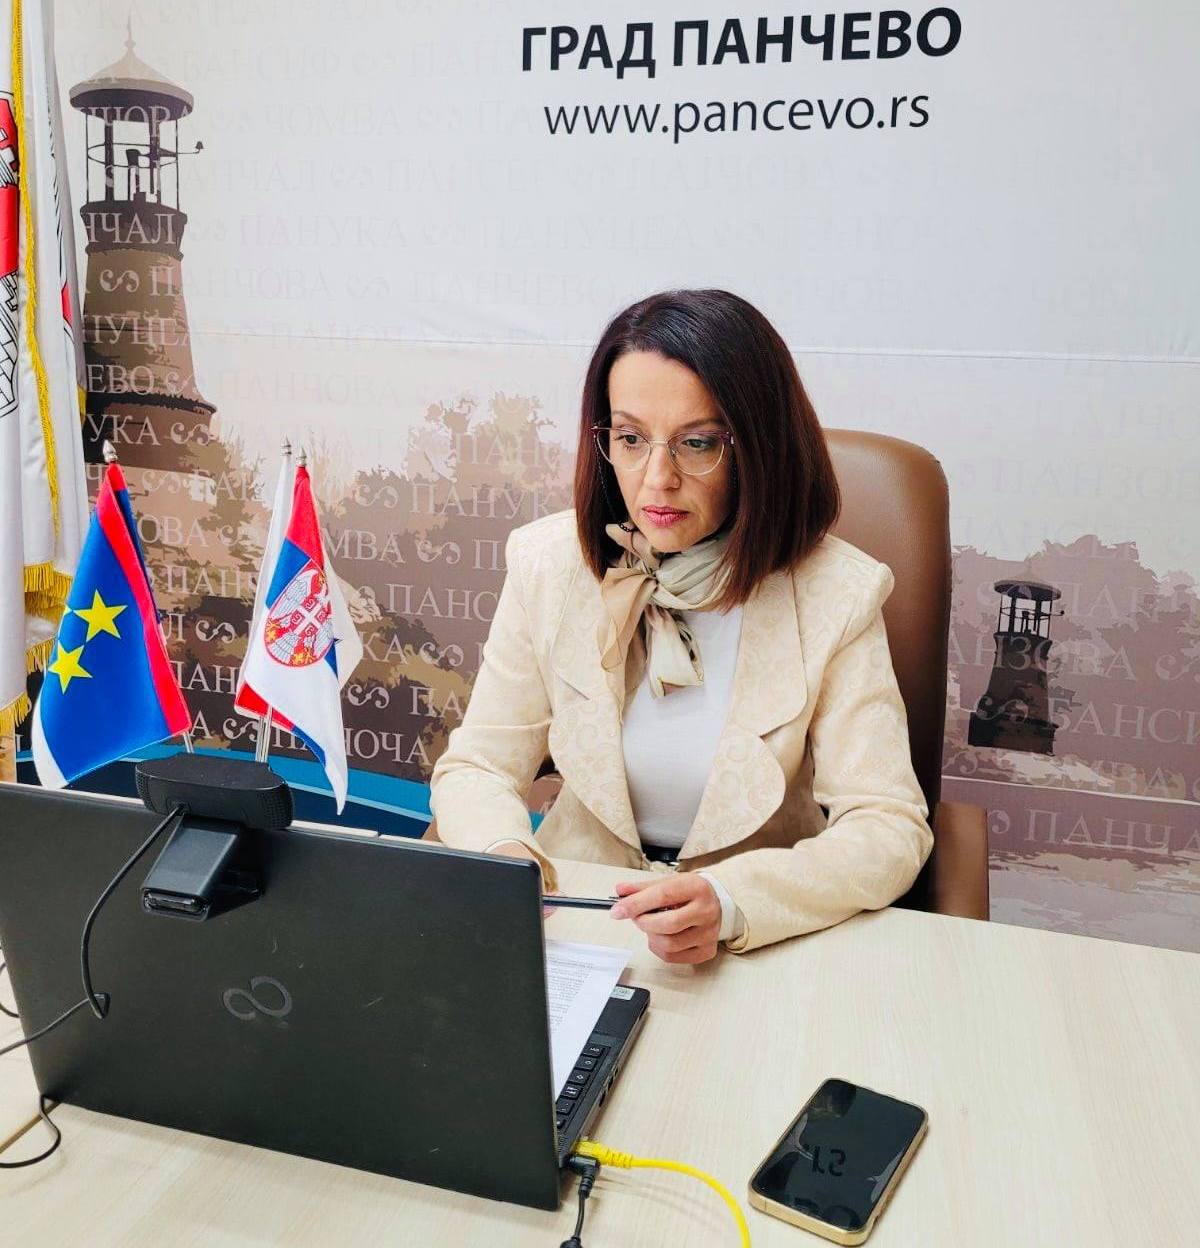 Gradska menadžerka Maja Vitman: Referendum je početak novog poglavlja pravosudnih institucija